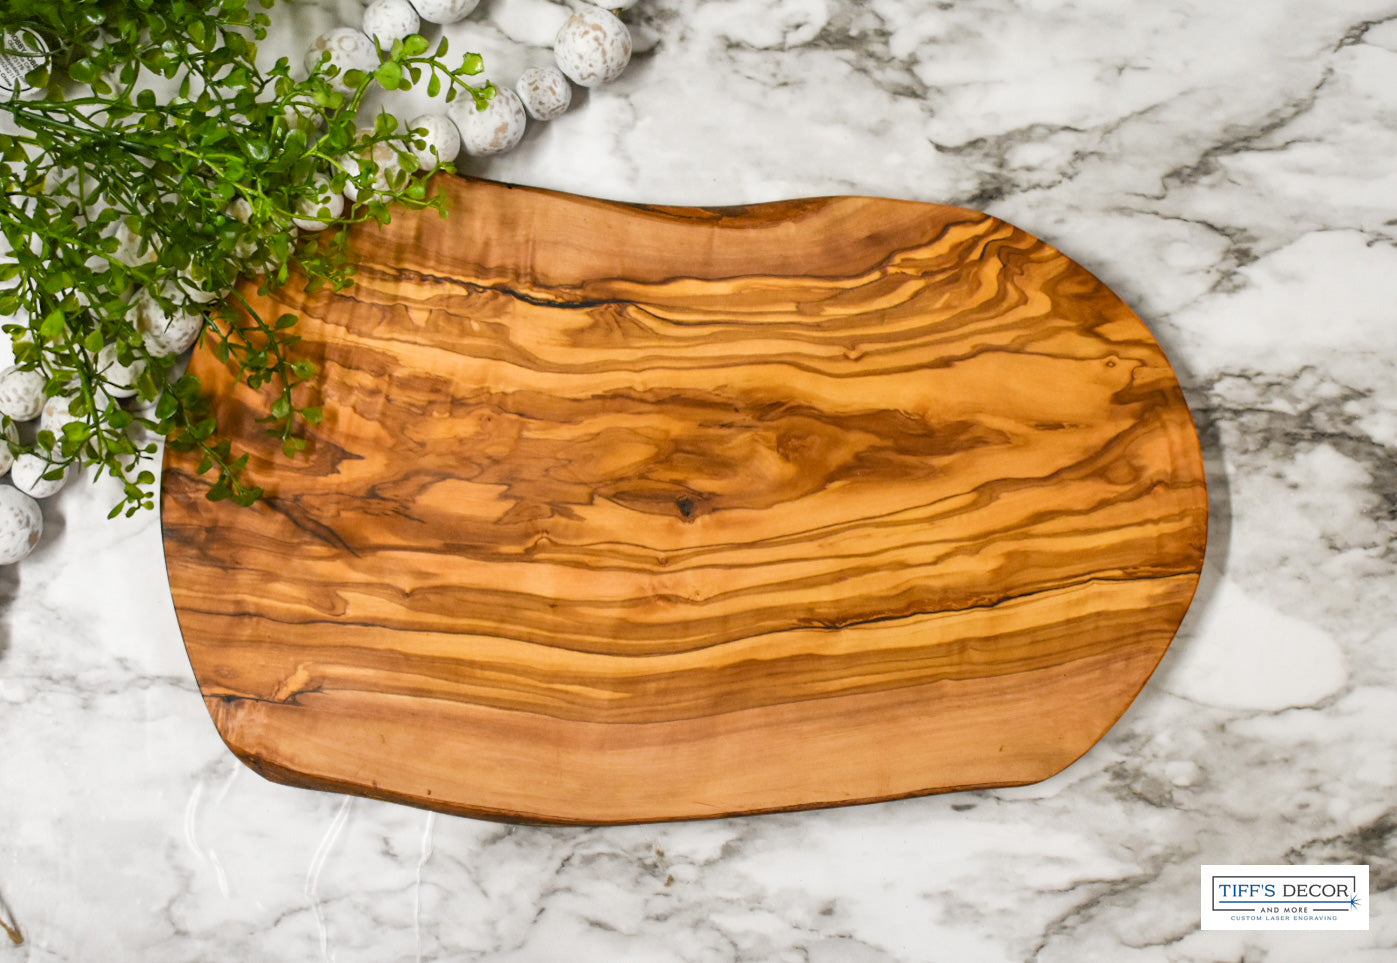 Olive wood 14.5 x9 inch cutting board